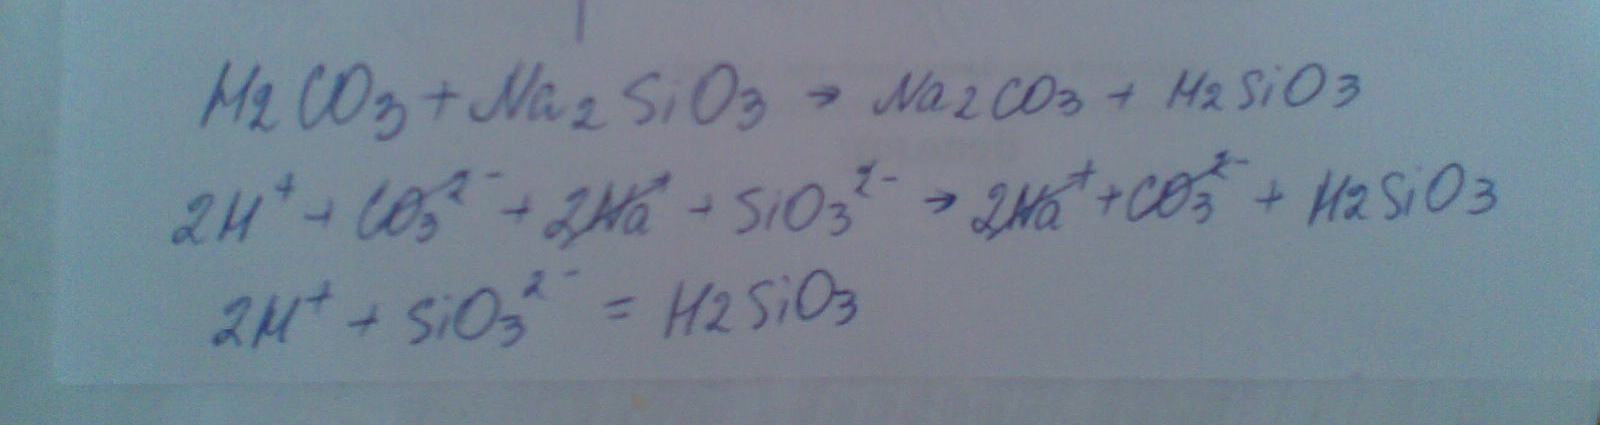 Fecl2 sio2. 2h sio3 h2sio3 молекулярное уравнение. H2sio3 прокалили.